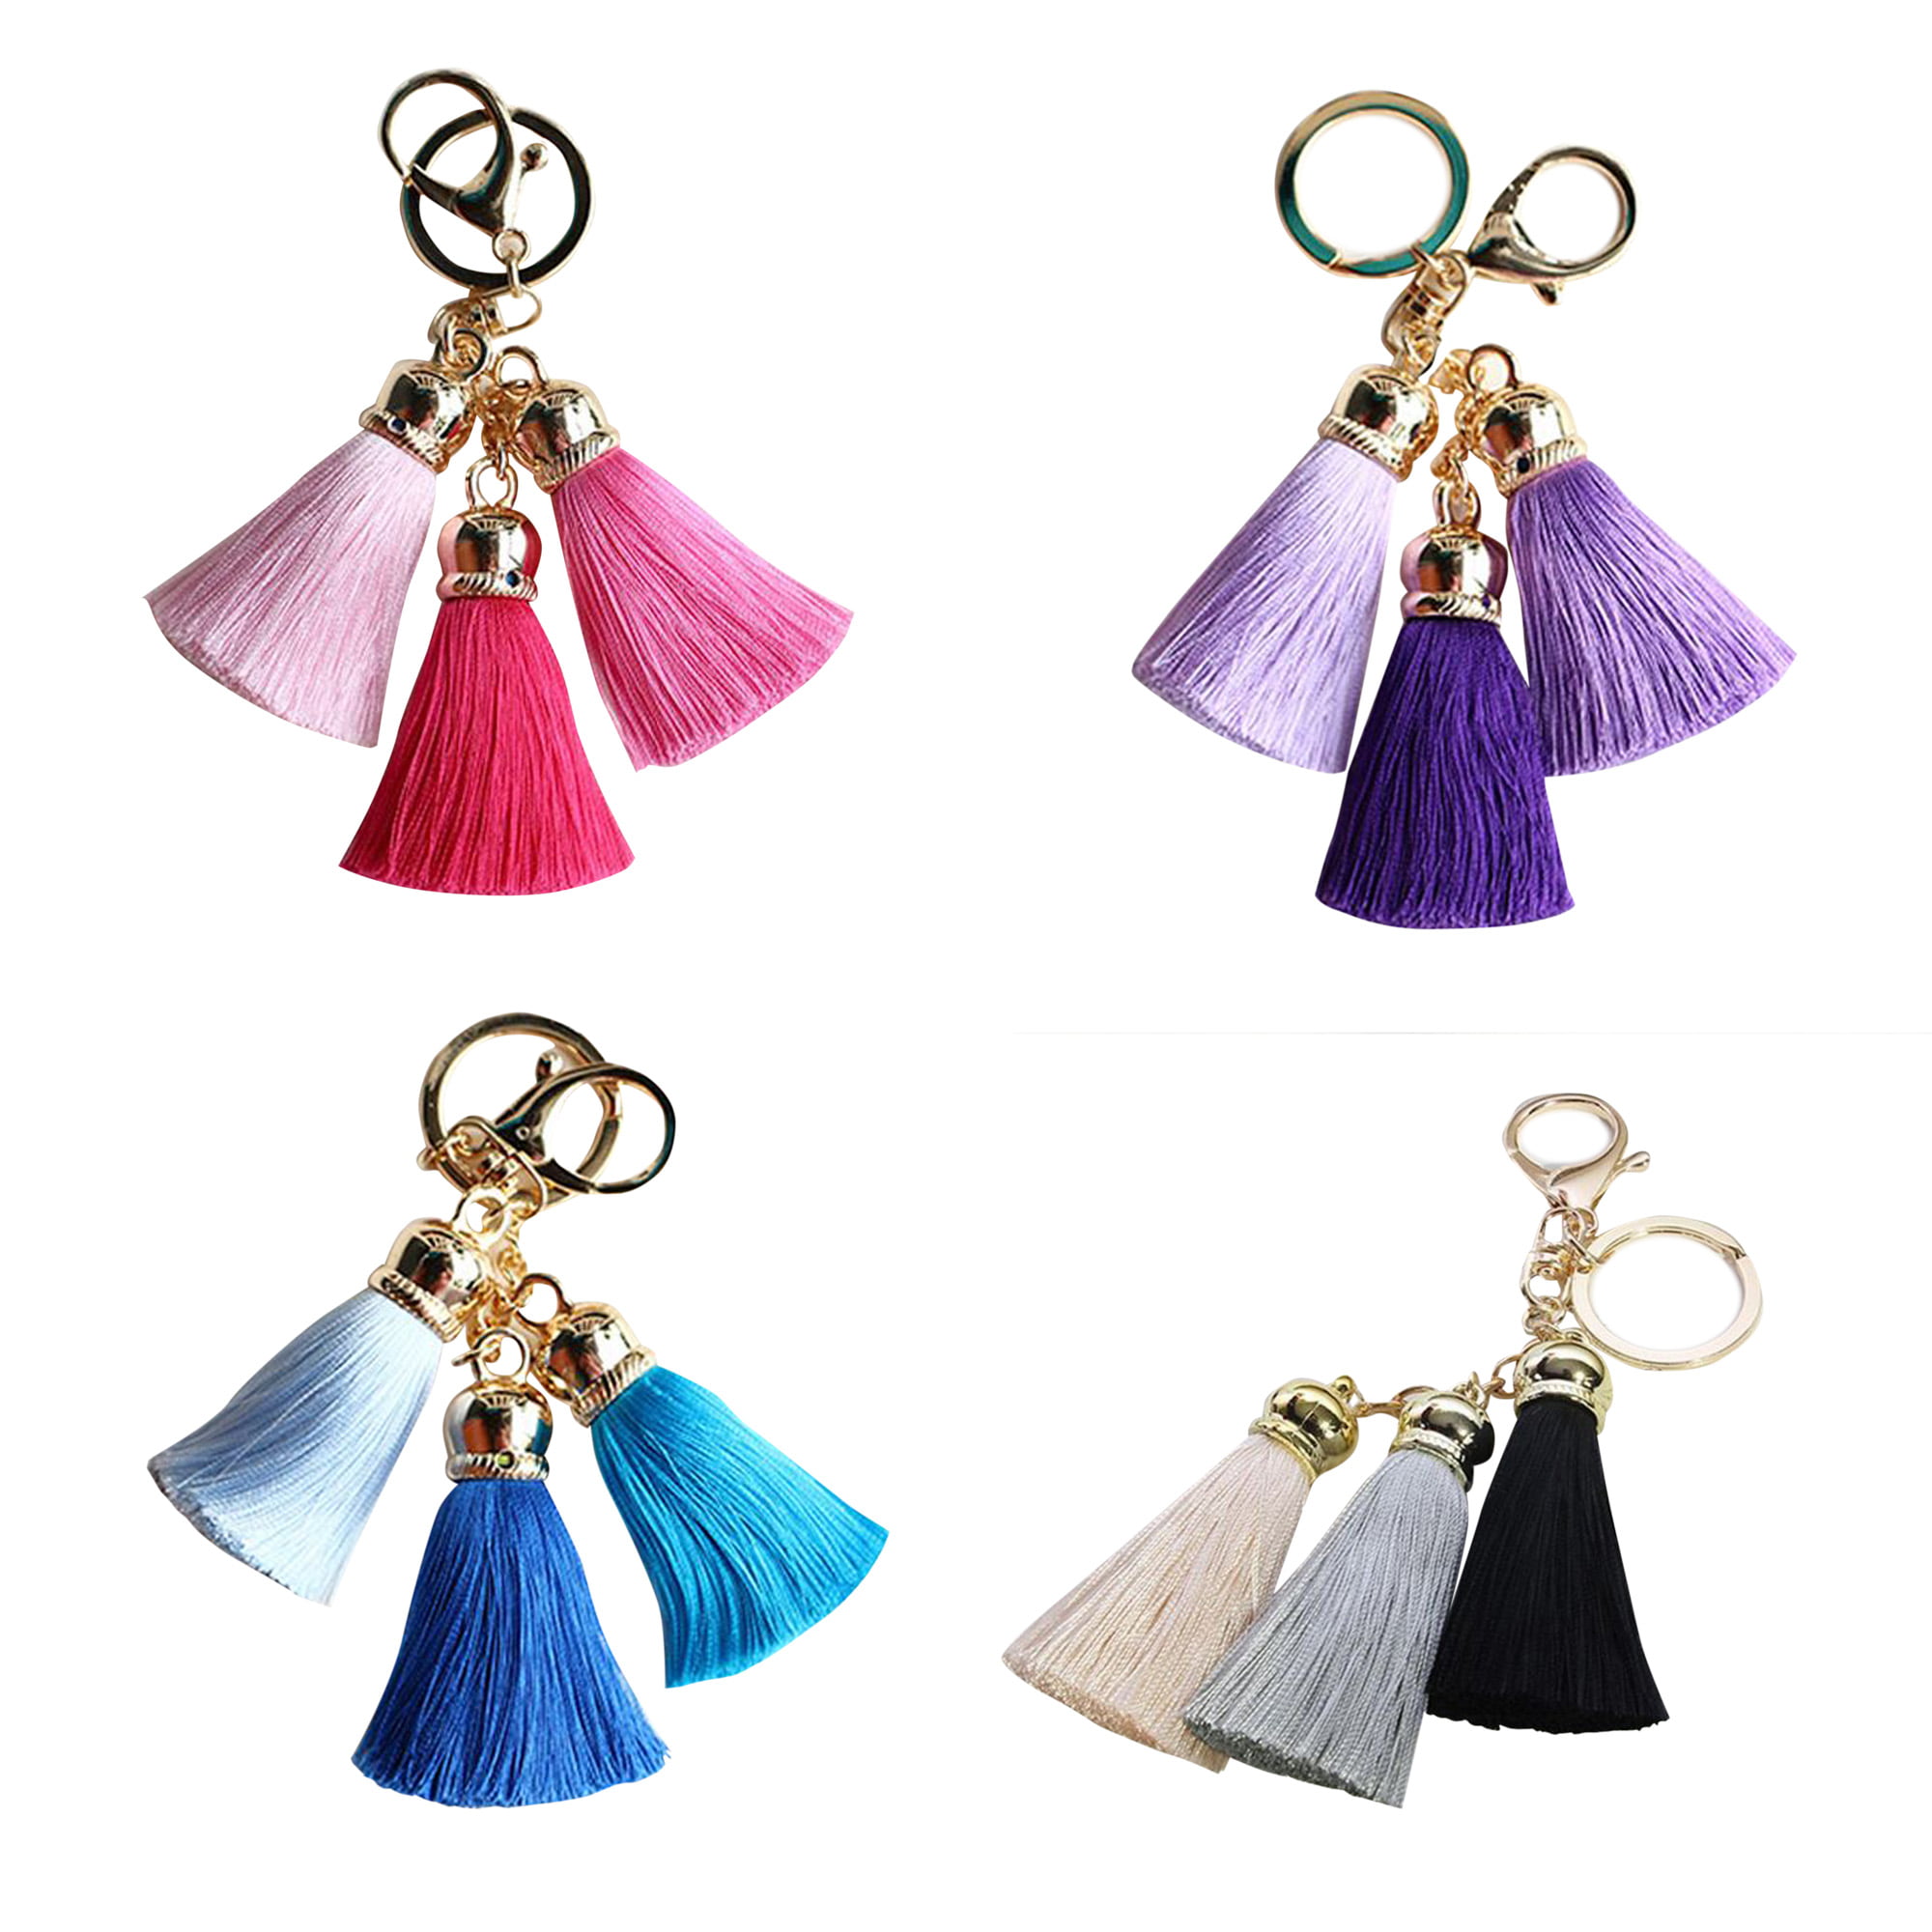 NEW Metal Tassel Keychain / Charm 6 - 3 Colors: Gold, Silver, & Dark –  KimmieBBags LLC